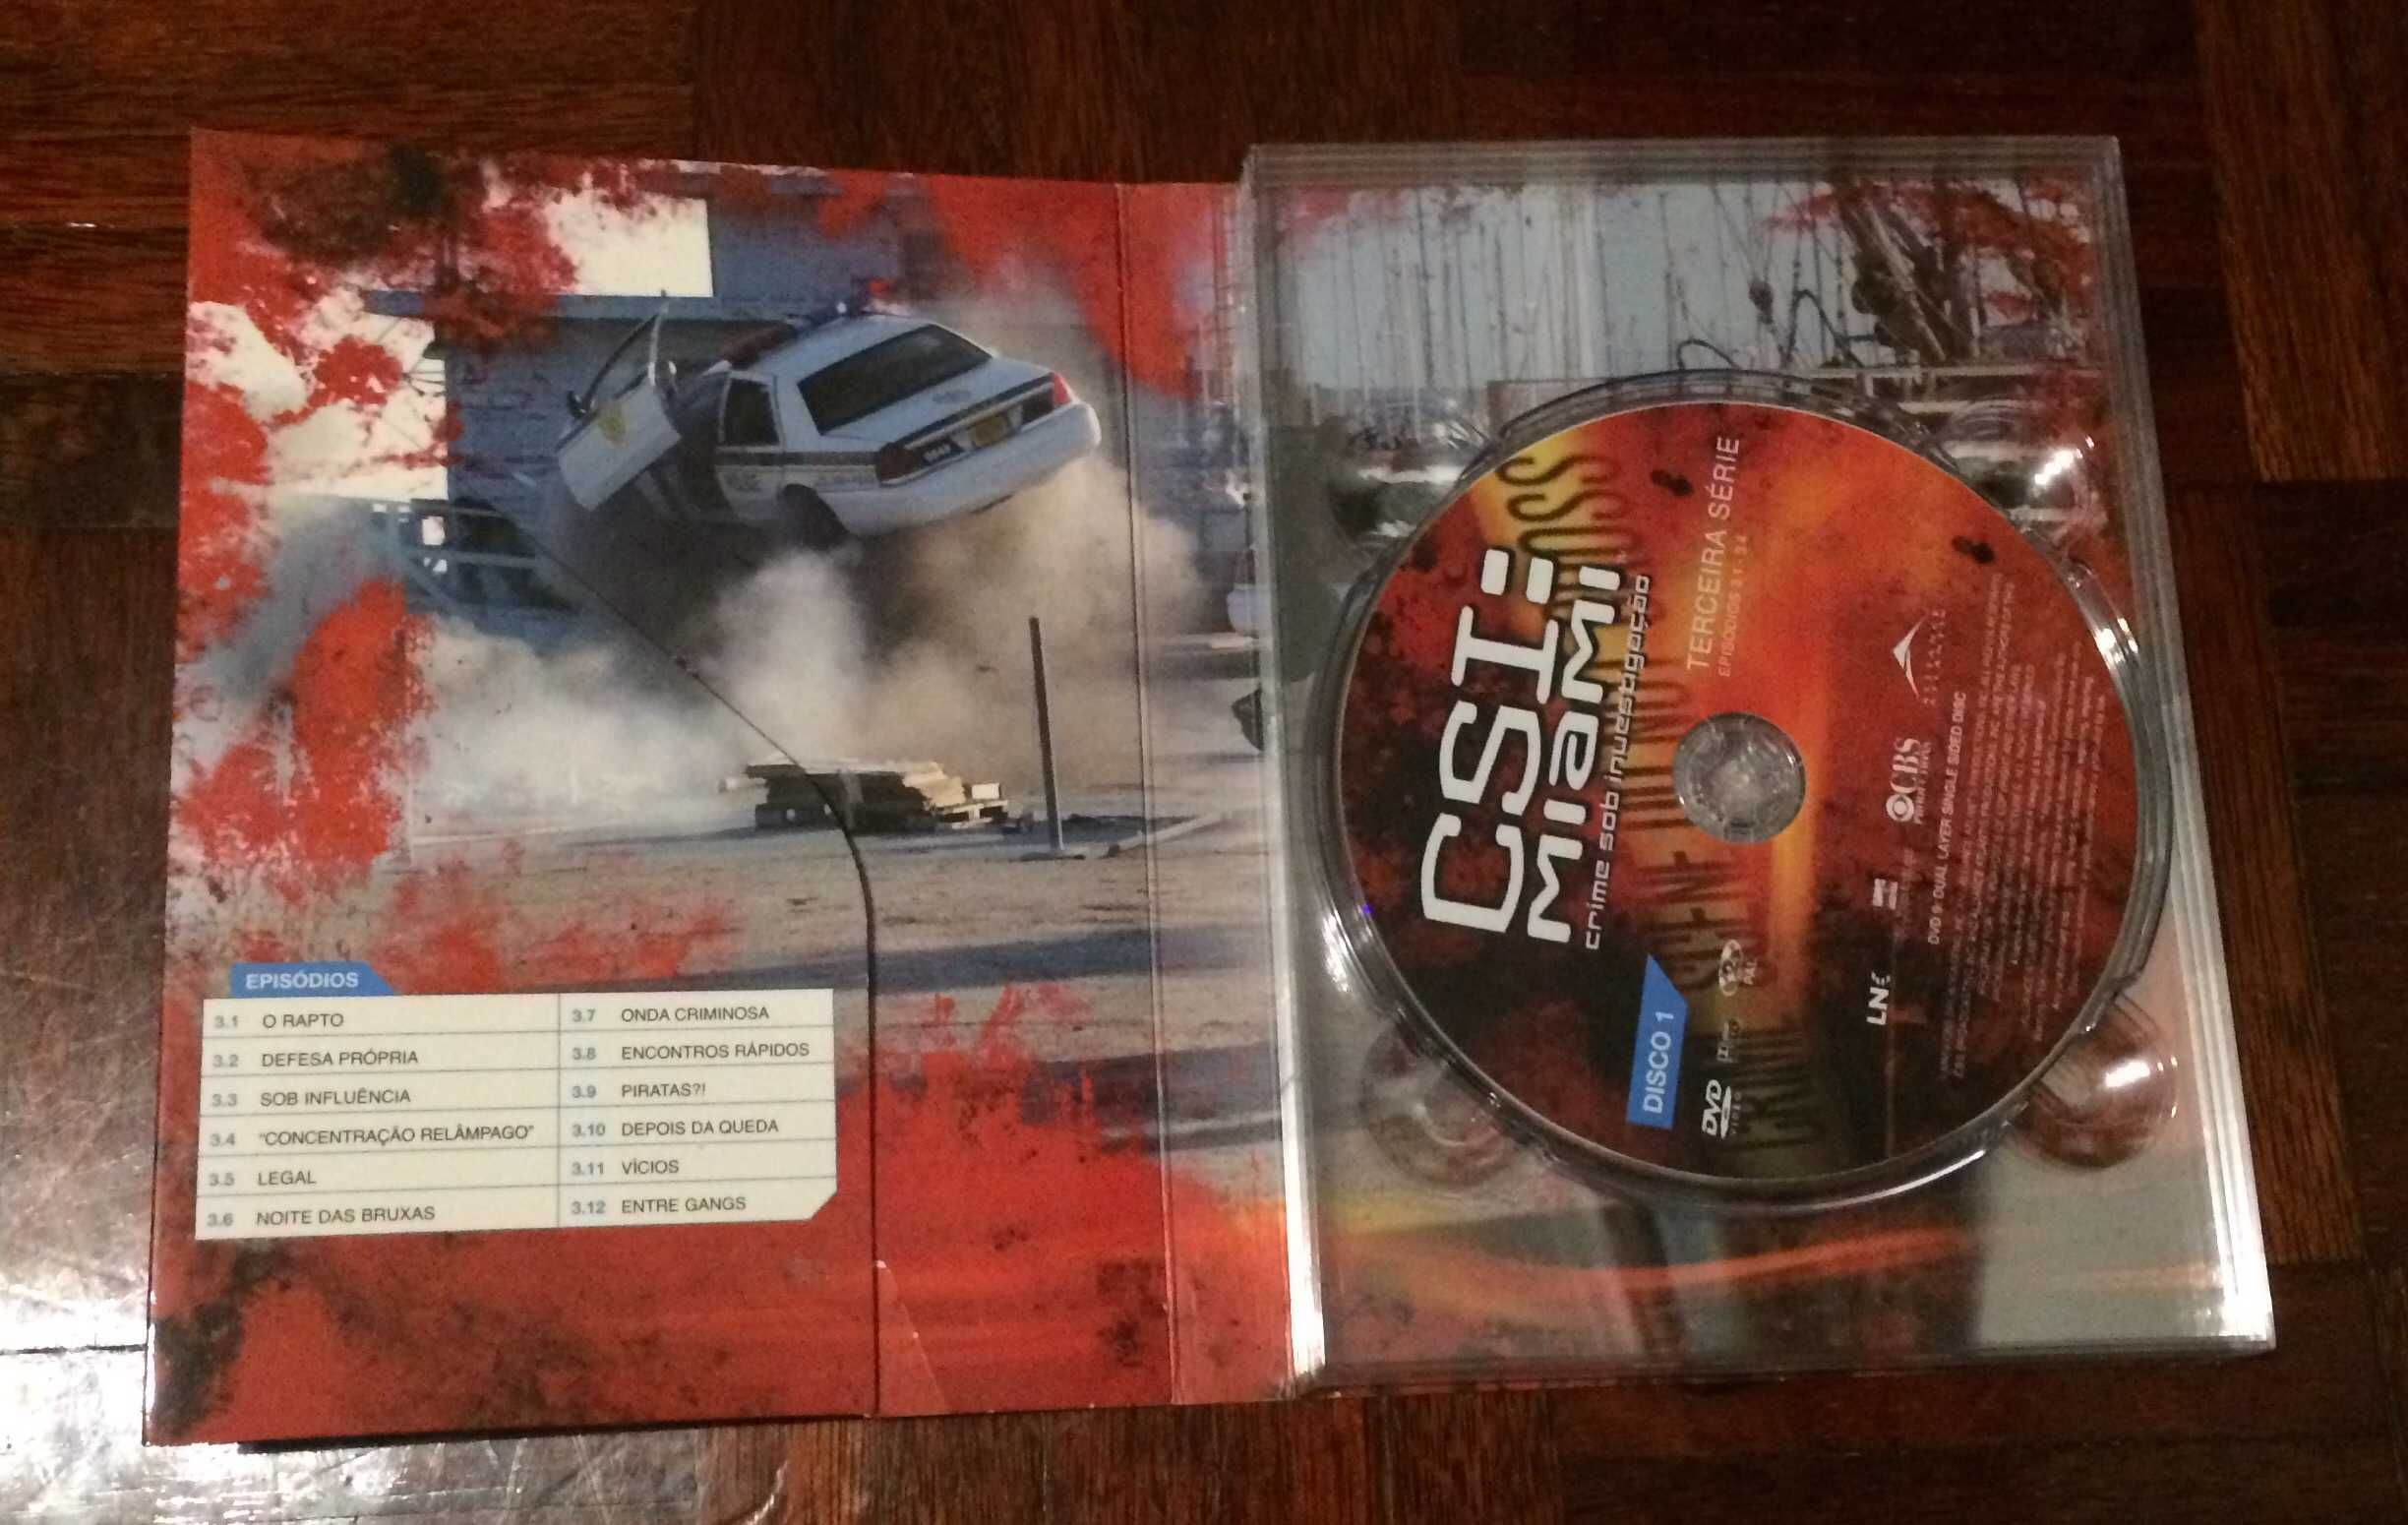 DVD CSI MIAMI. Caixa com 3 DVD